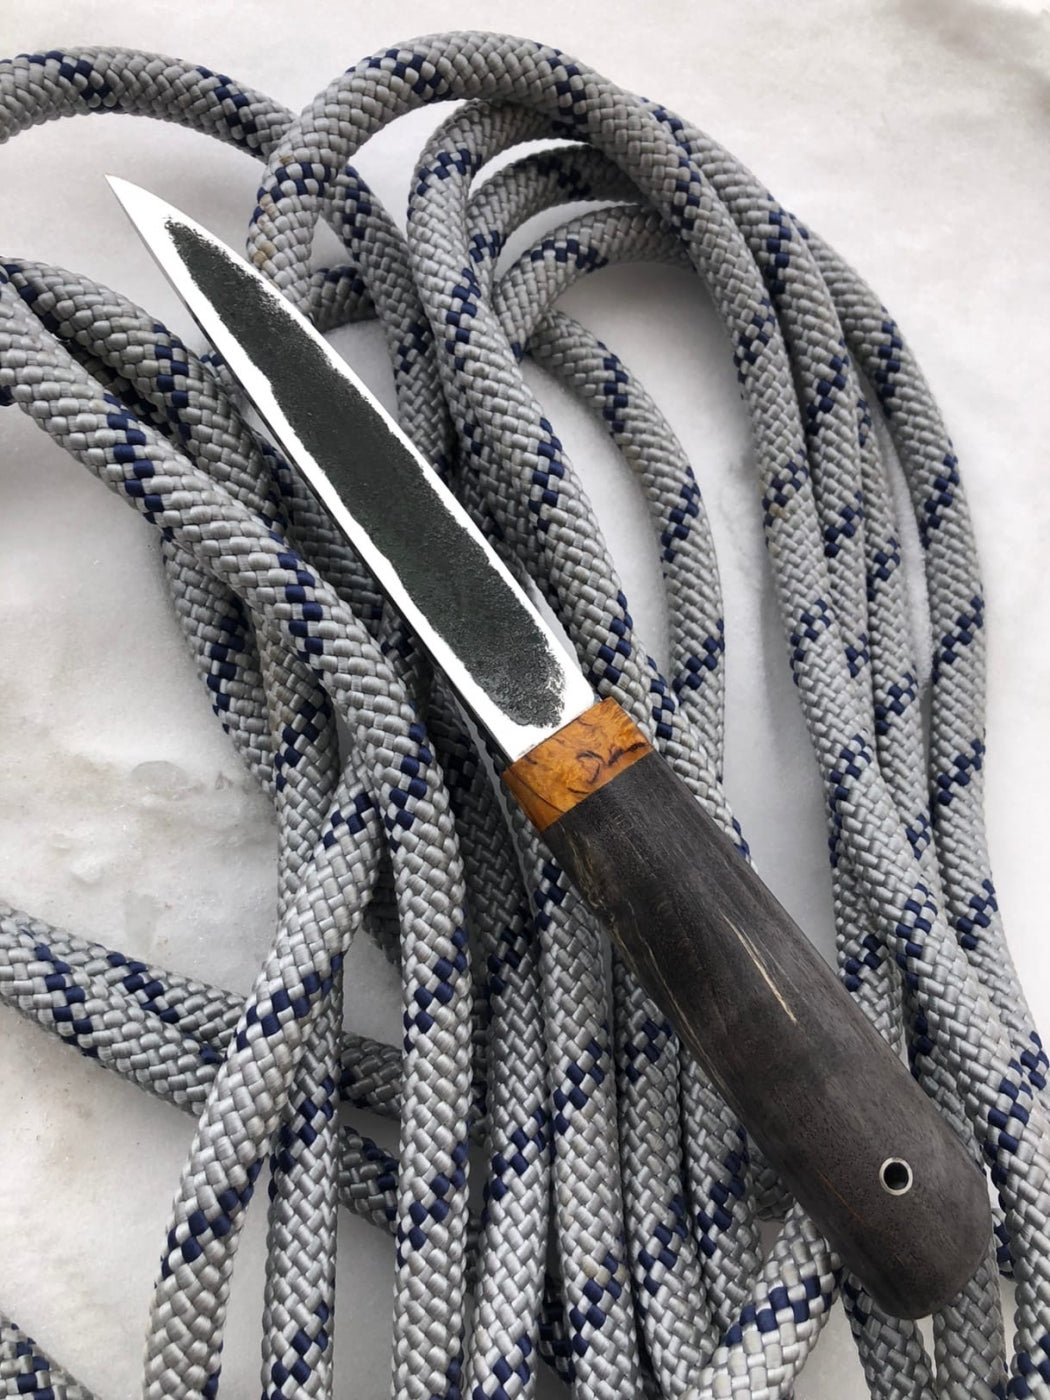 Cuchillo de Caza Yakuto con Grabado Artistico